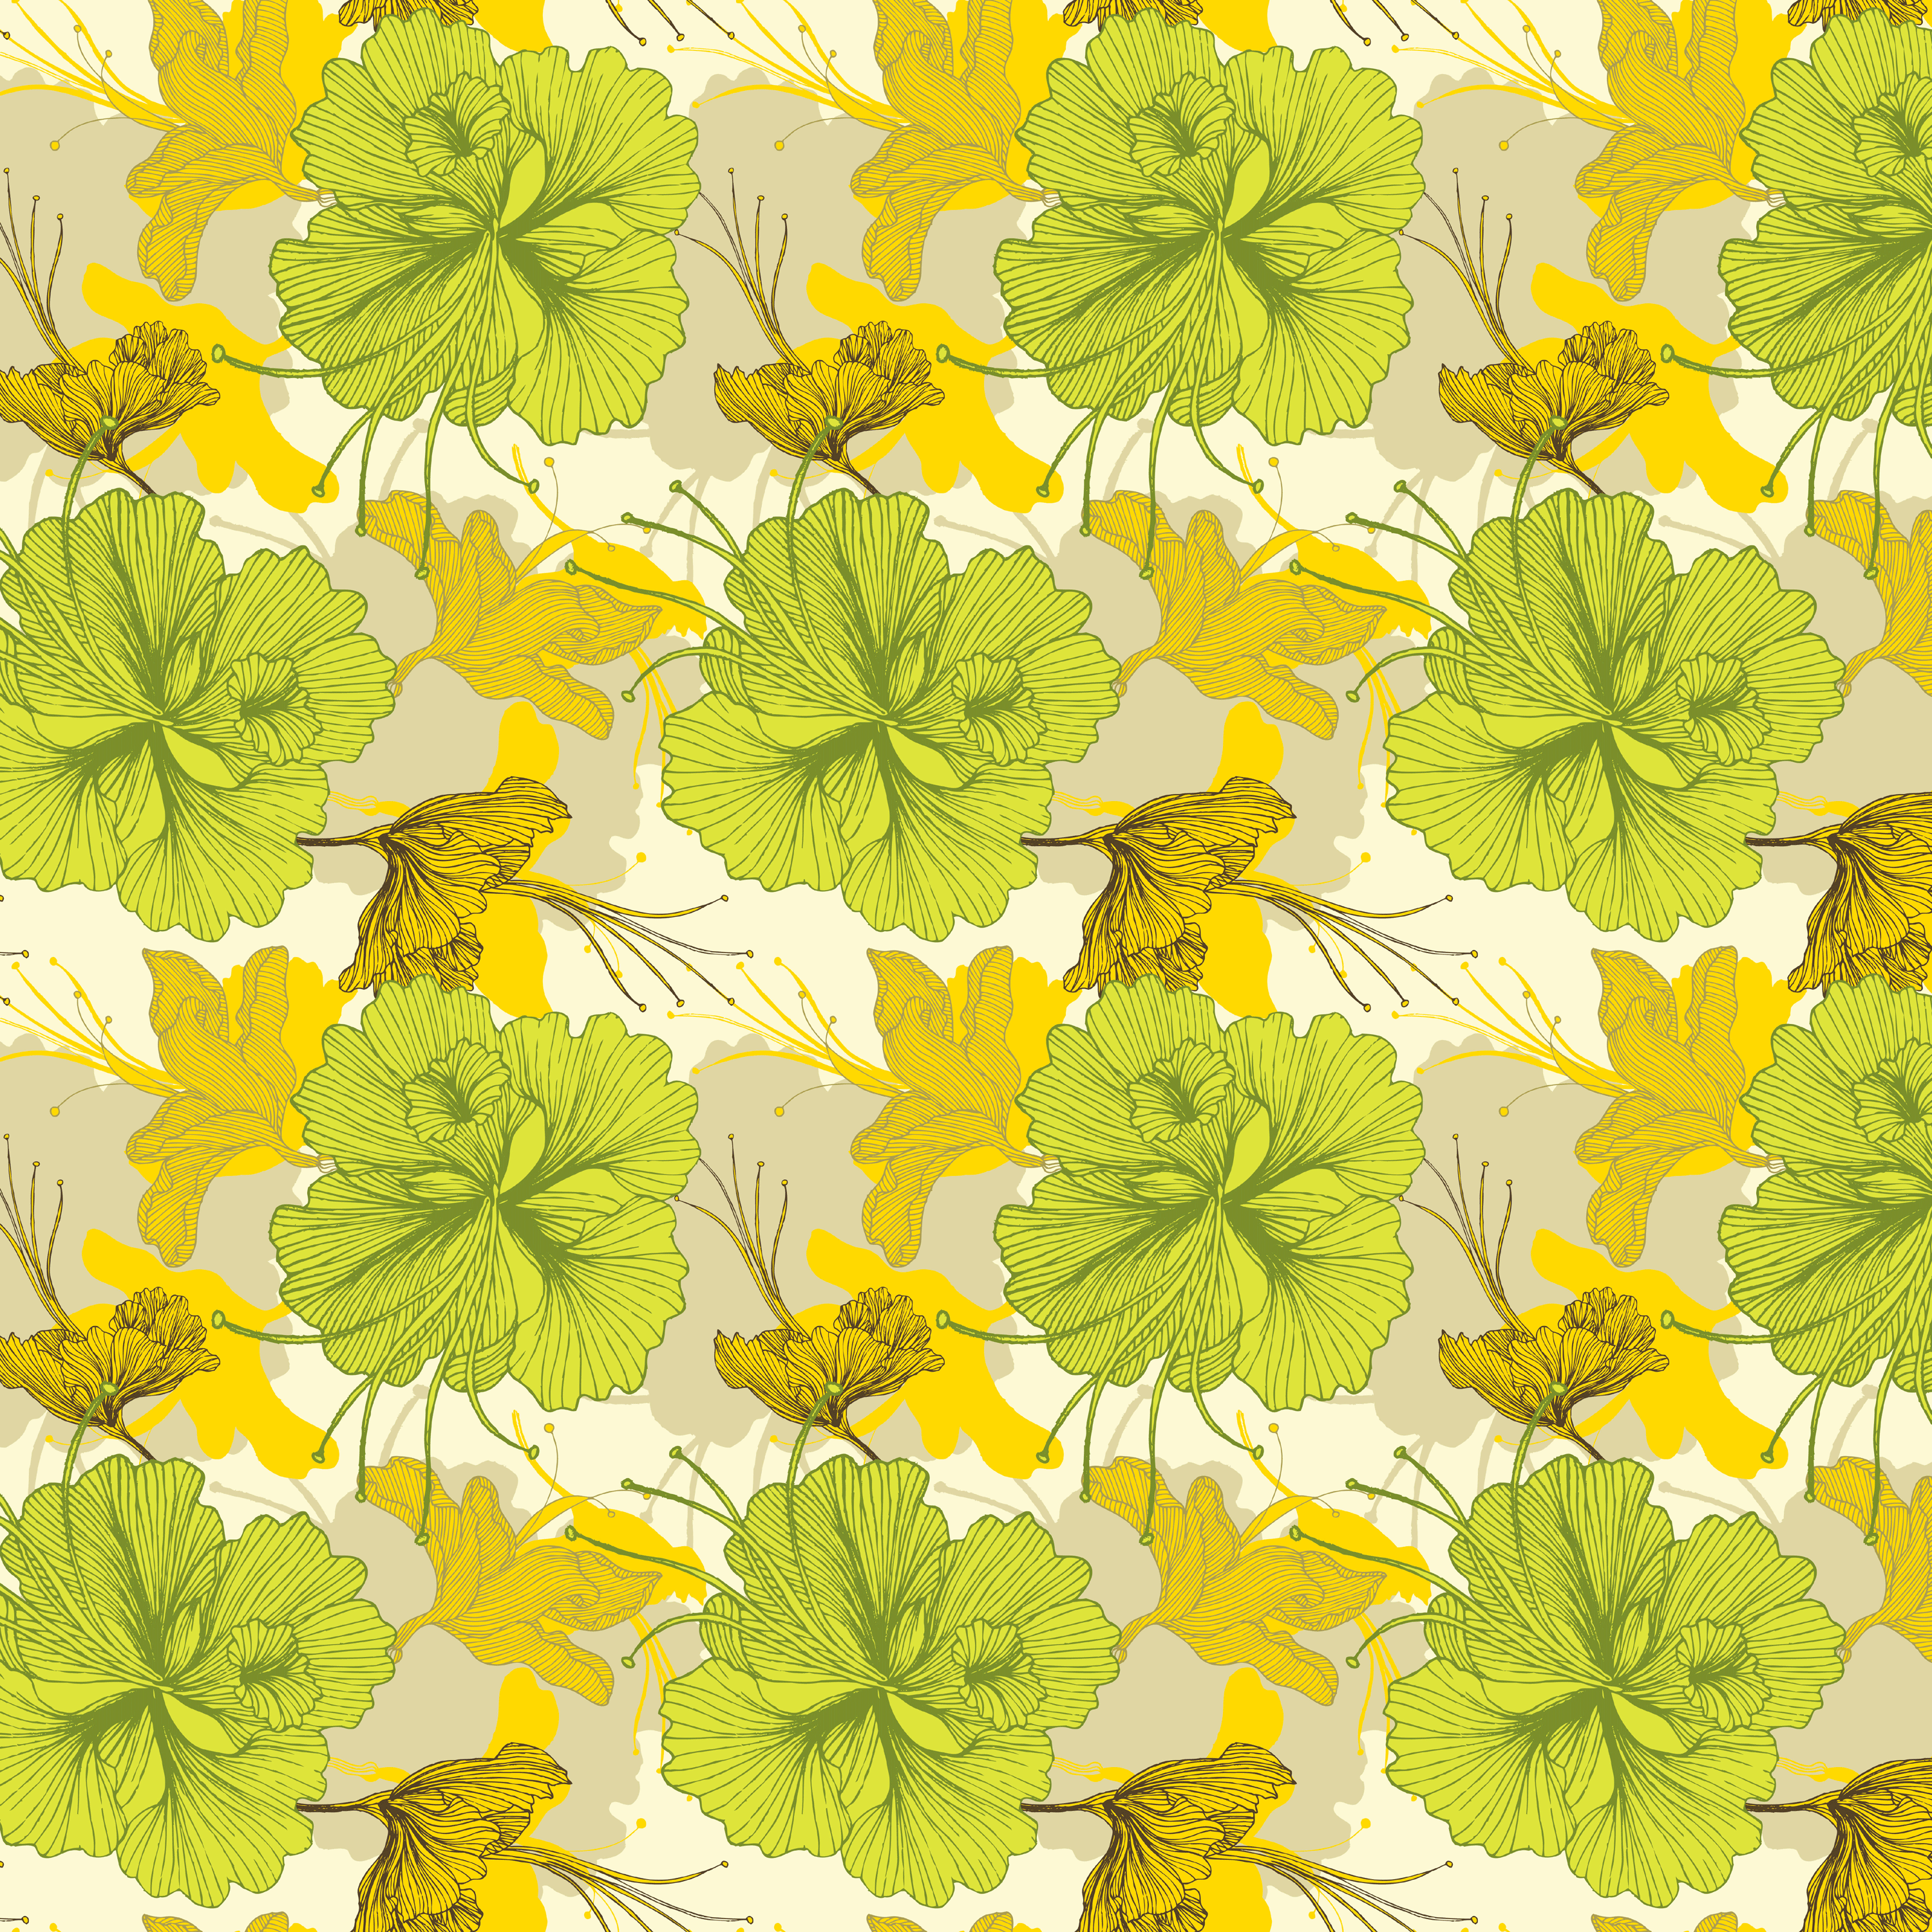 壁紙 背景イラスト 花の模様 柄 パターン No 186 黄緑 葉